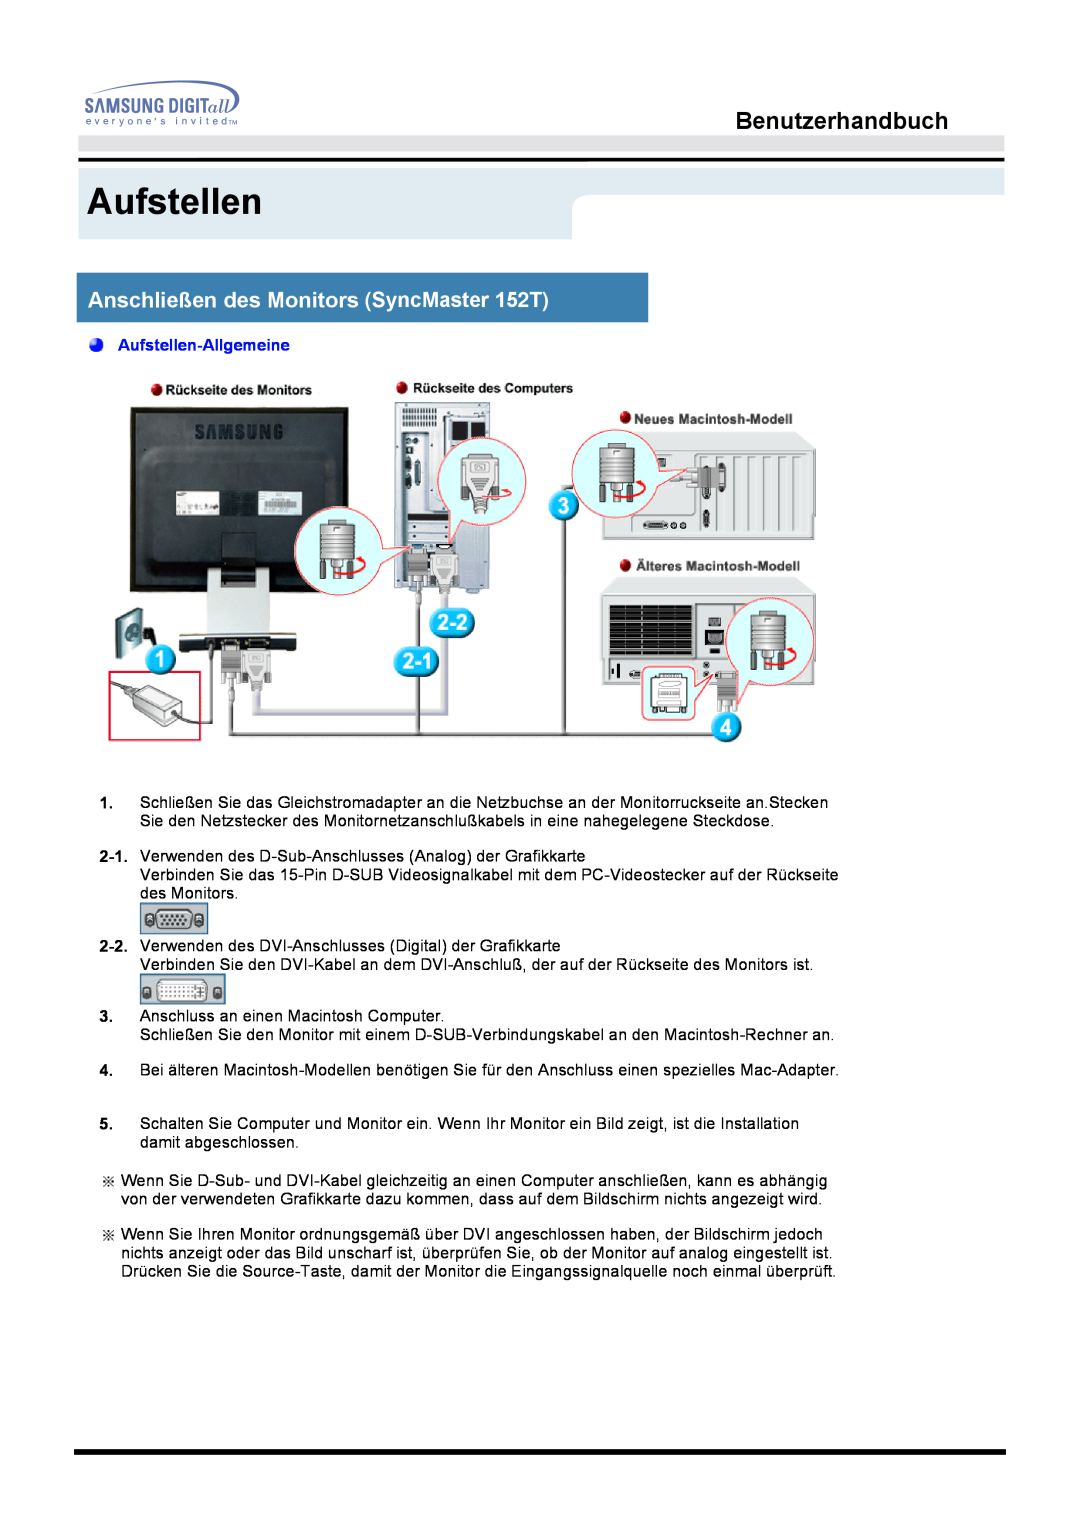 Samsung MO15PSDS/EDC, MO15ESDS/XEU Benutzerhandbuch, Anschließen des Monitors SyncMaster 152T, Aufstellen-Allgemeine 